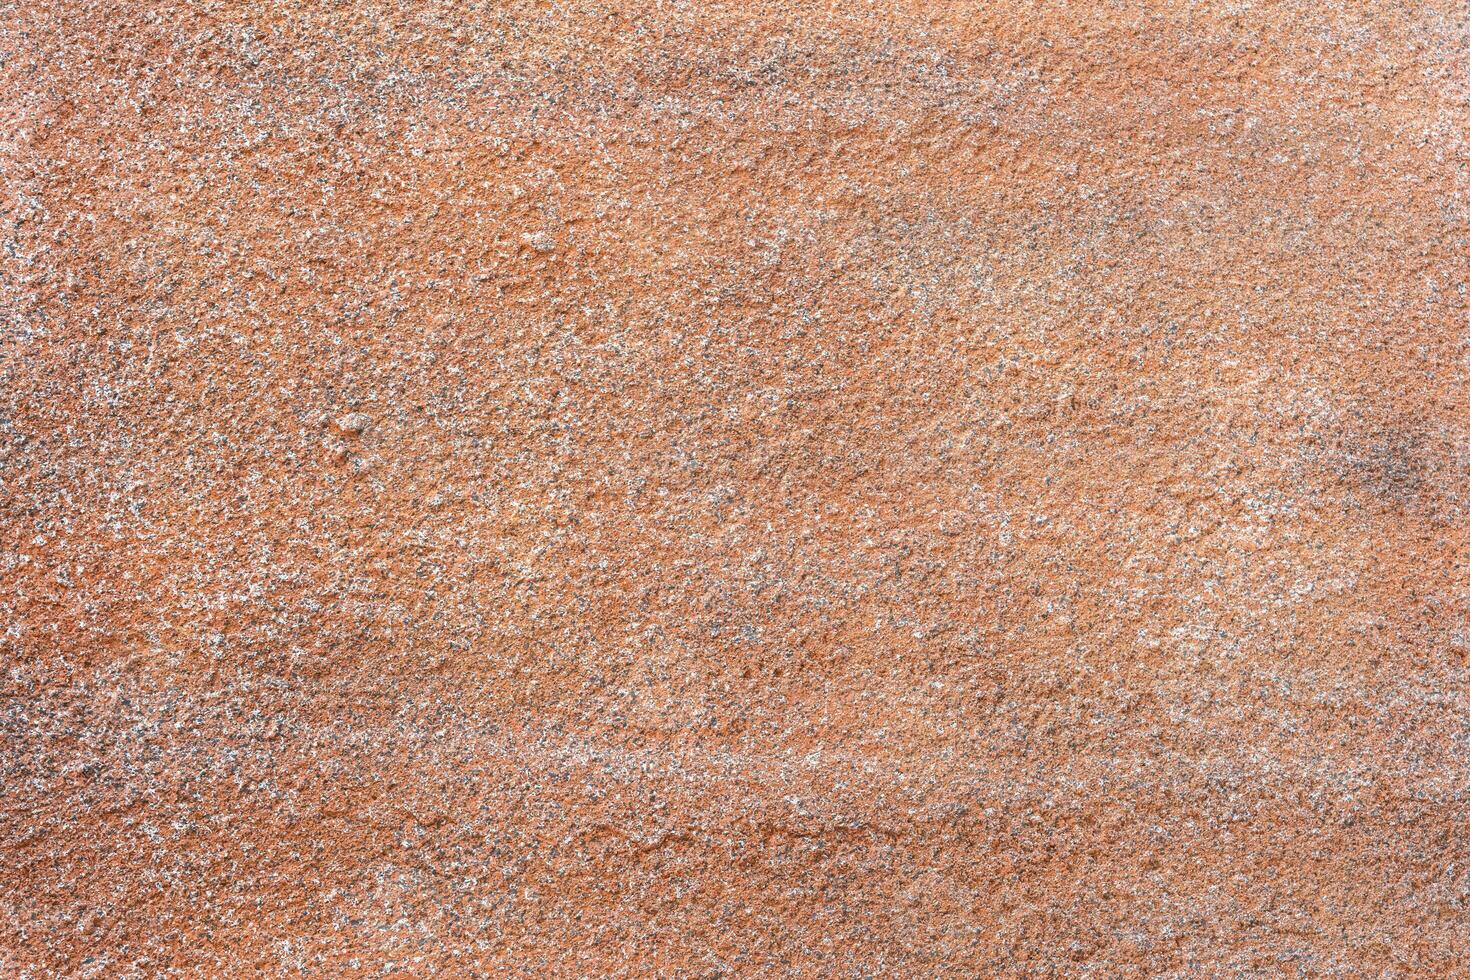 Polyurethan Schaum ist gesprüht Startseite das Mauer zum Hintergrund und Hintergrund mögen Zement Textur und gemalt im Orange Rau Stil beim draussen Feld. foto